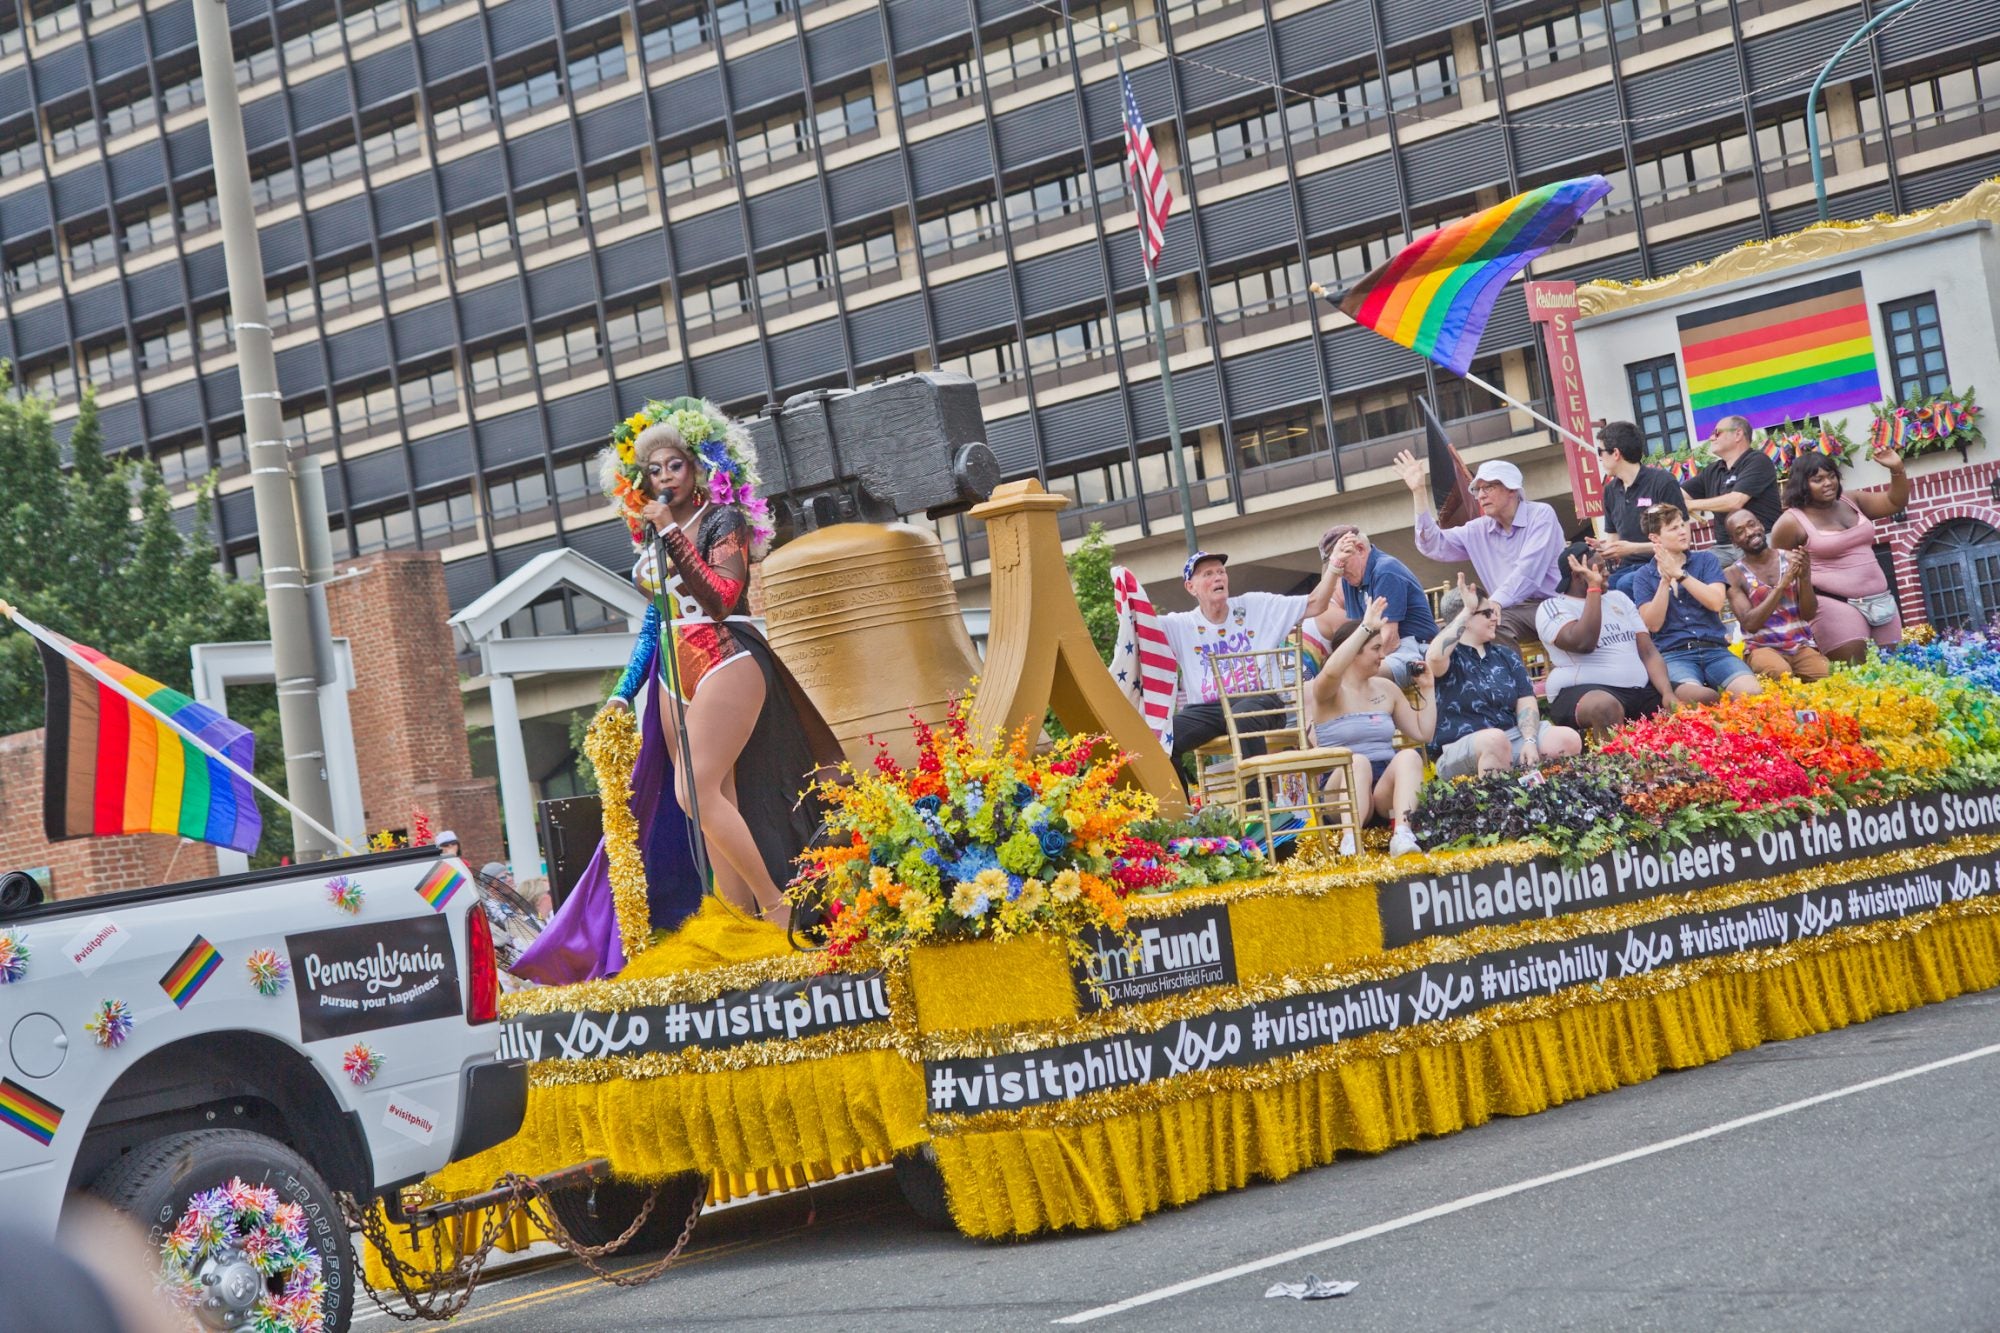 July 4th Parade in Philadelphia, Pennsylvania, where Patti LaBelle